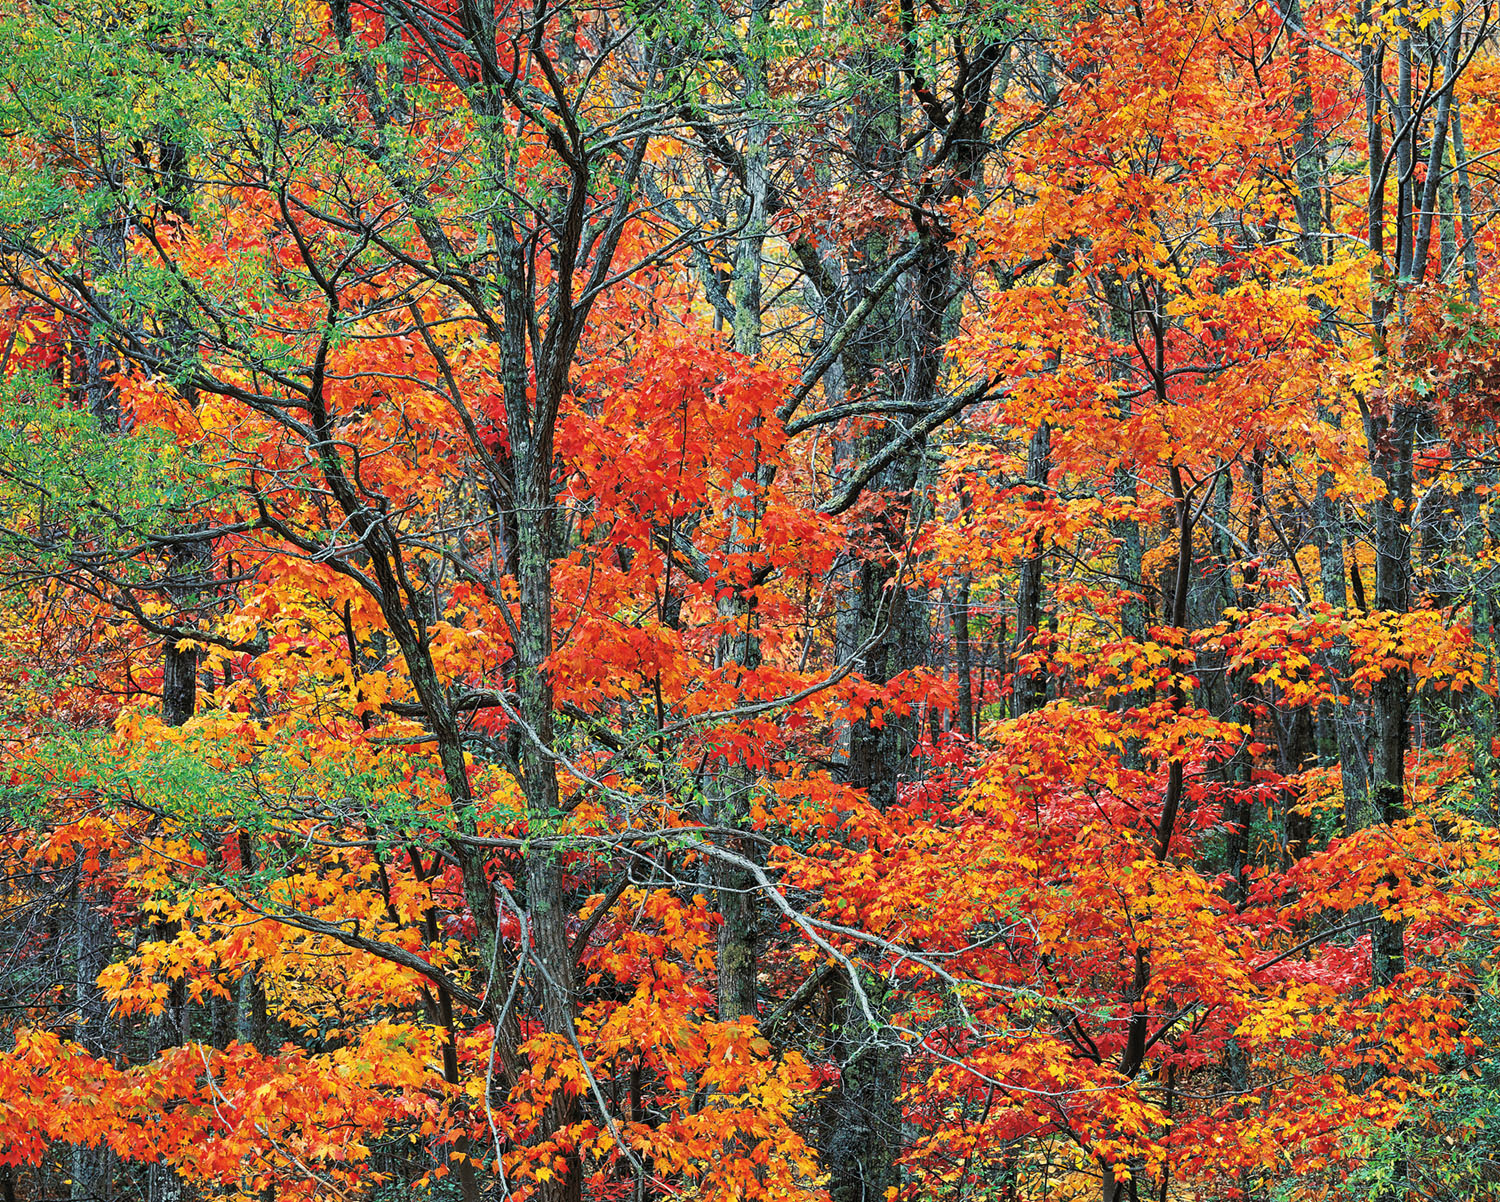 Cherokee Autumn Forest